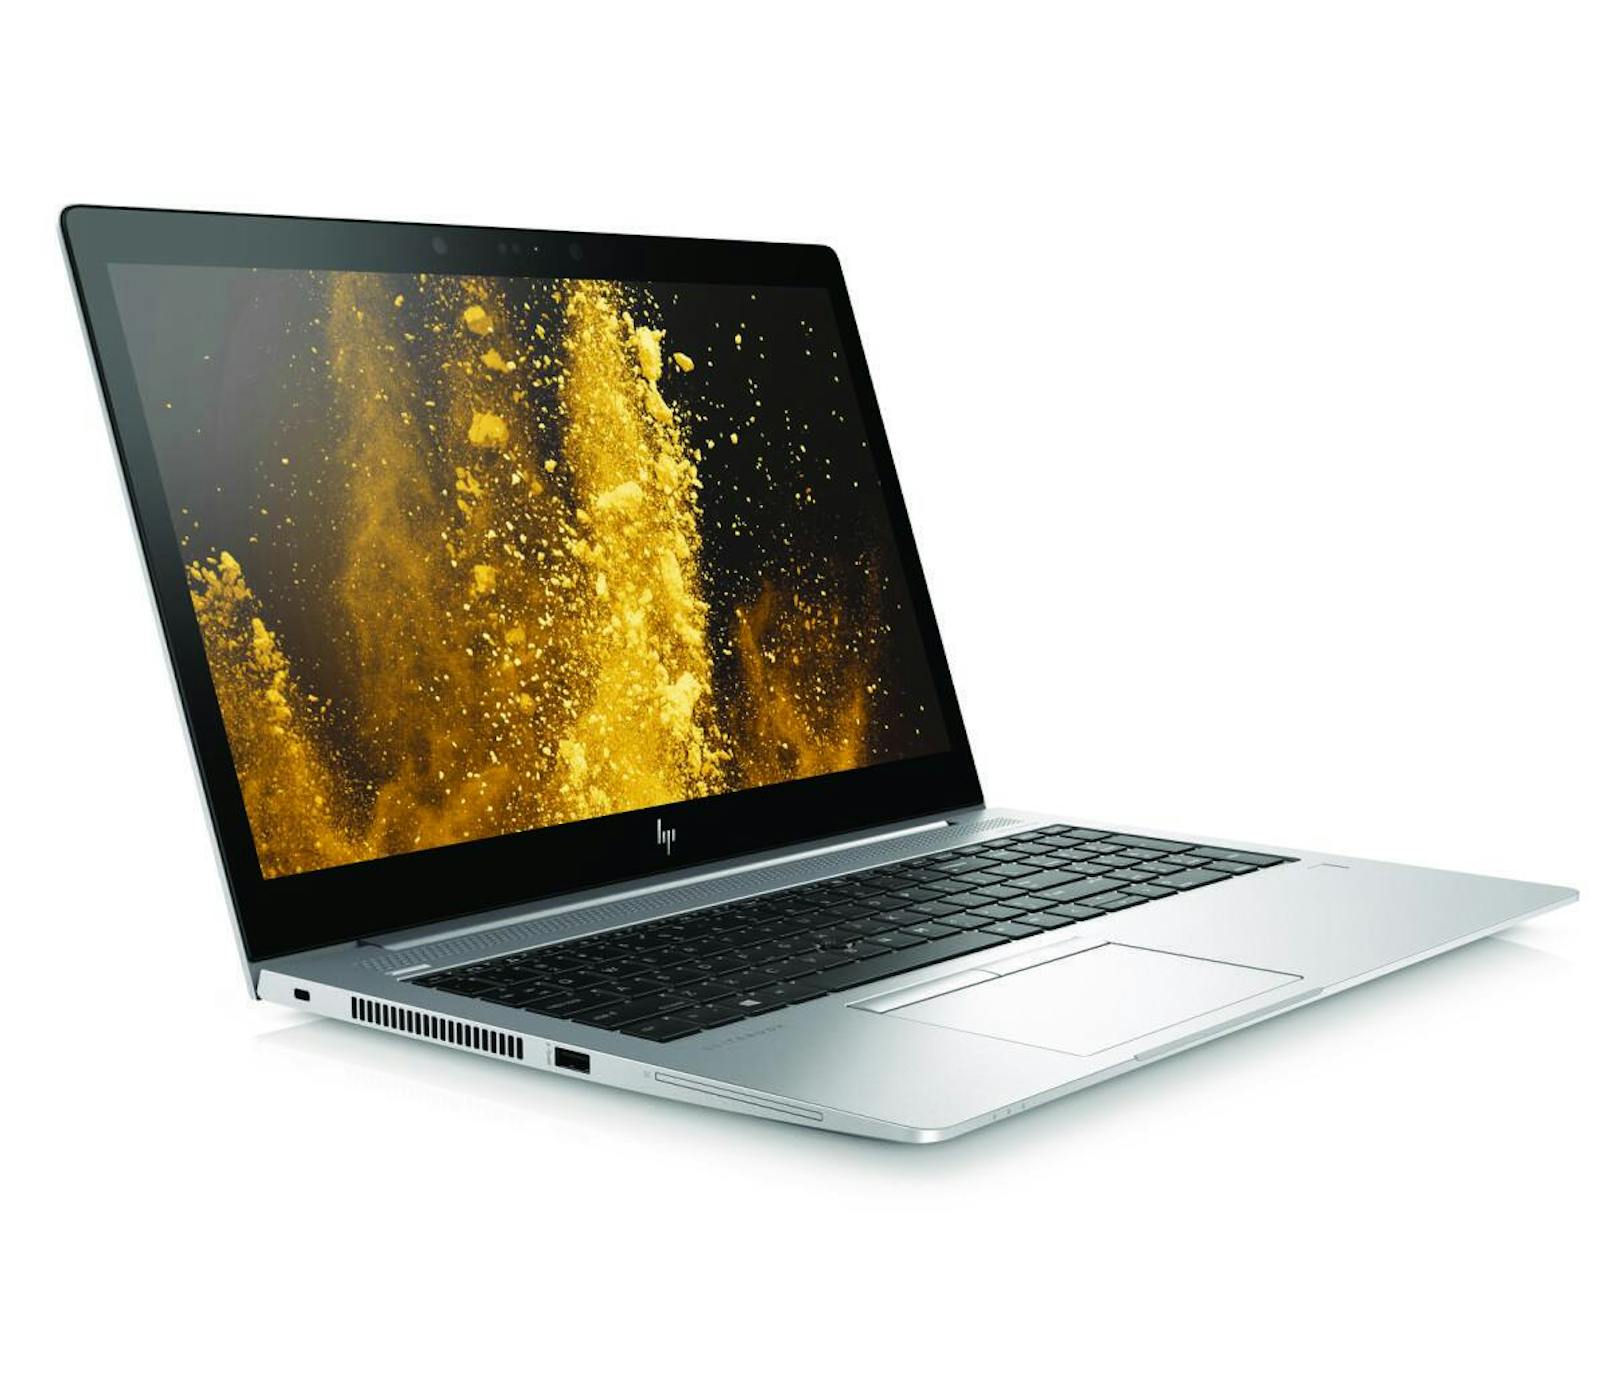 HP enthüllt eine ganze Reihe neuer Geräte, Bildschirme und Zubehörteile und erweitert die HP EliteBook 800-Serie sowie die HP ZBook 14u und 15u mobilen Workstations um Premium-Features. Herzstück: Das HP EliteBook 830 G5 ersetzt das HP EliteBook 820 G4 mit einem 13-Zoll-Bildschirm (33,02cm) in einem 12-Zoll-Notebook-Profil (30,48cm).